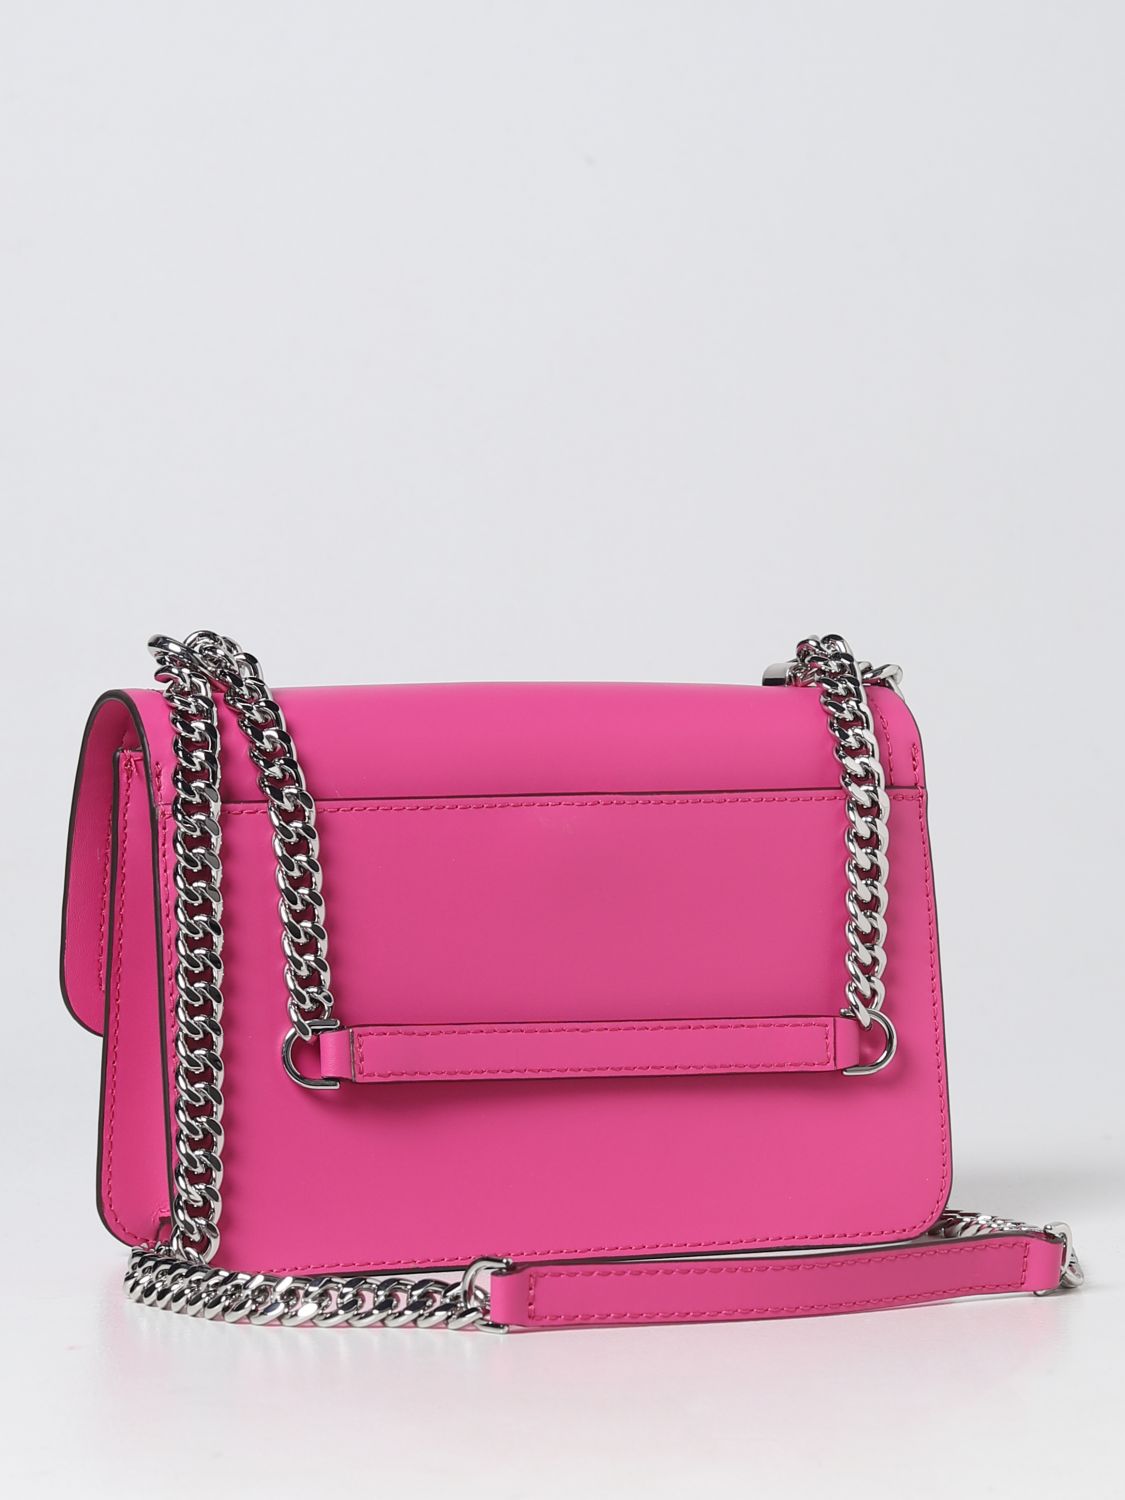 MICHAEL KORS: shoulder bag for woman - Pink | Michael Kors shoulder bag ...